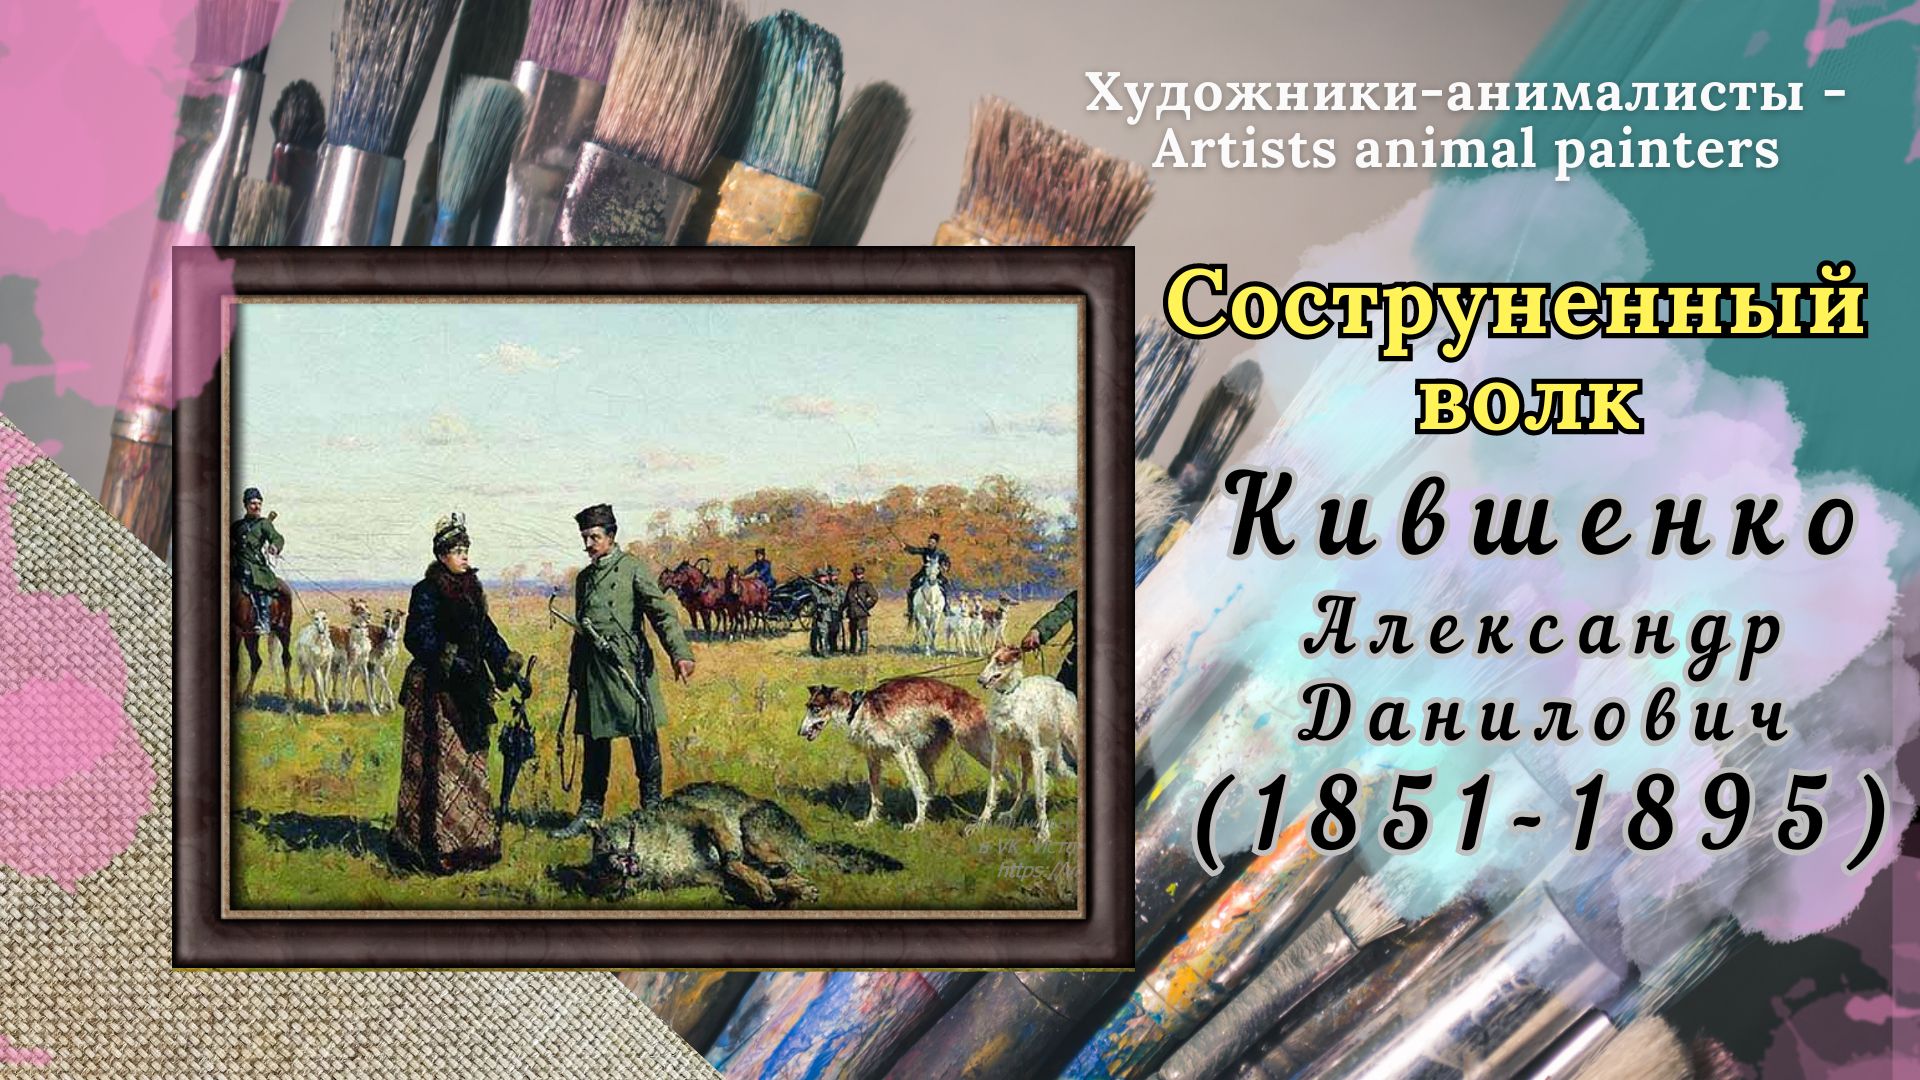 "Соструненный волк" - работа художника А.Д. Кившенко (1851-1895)